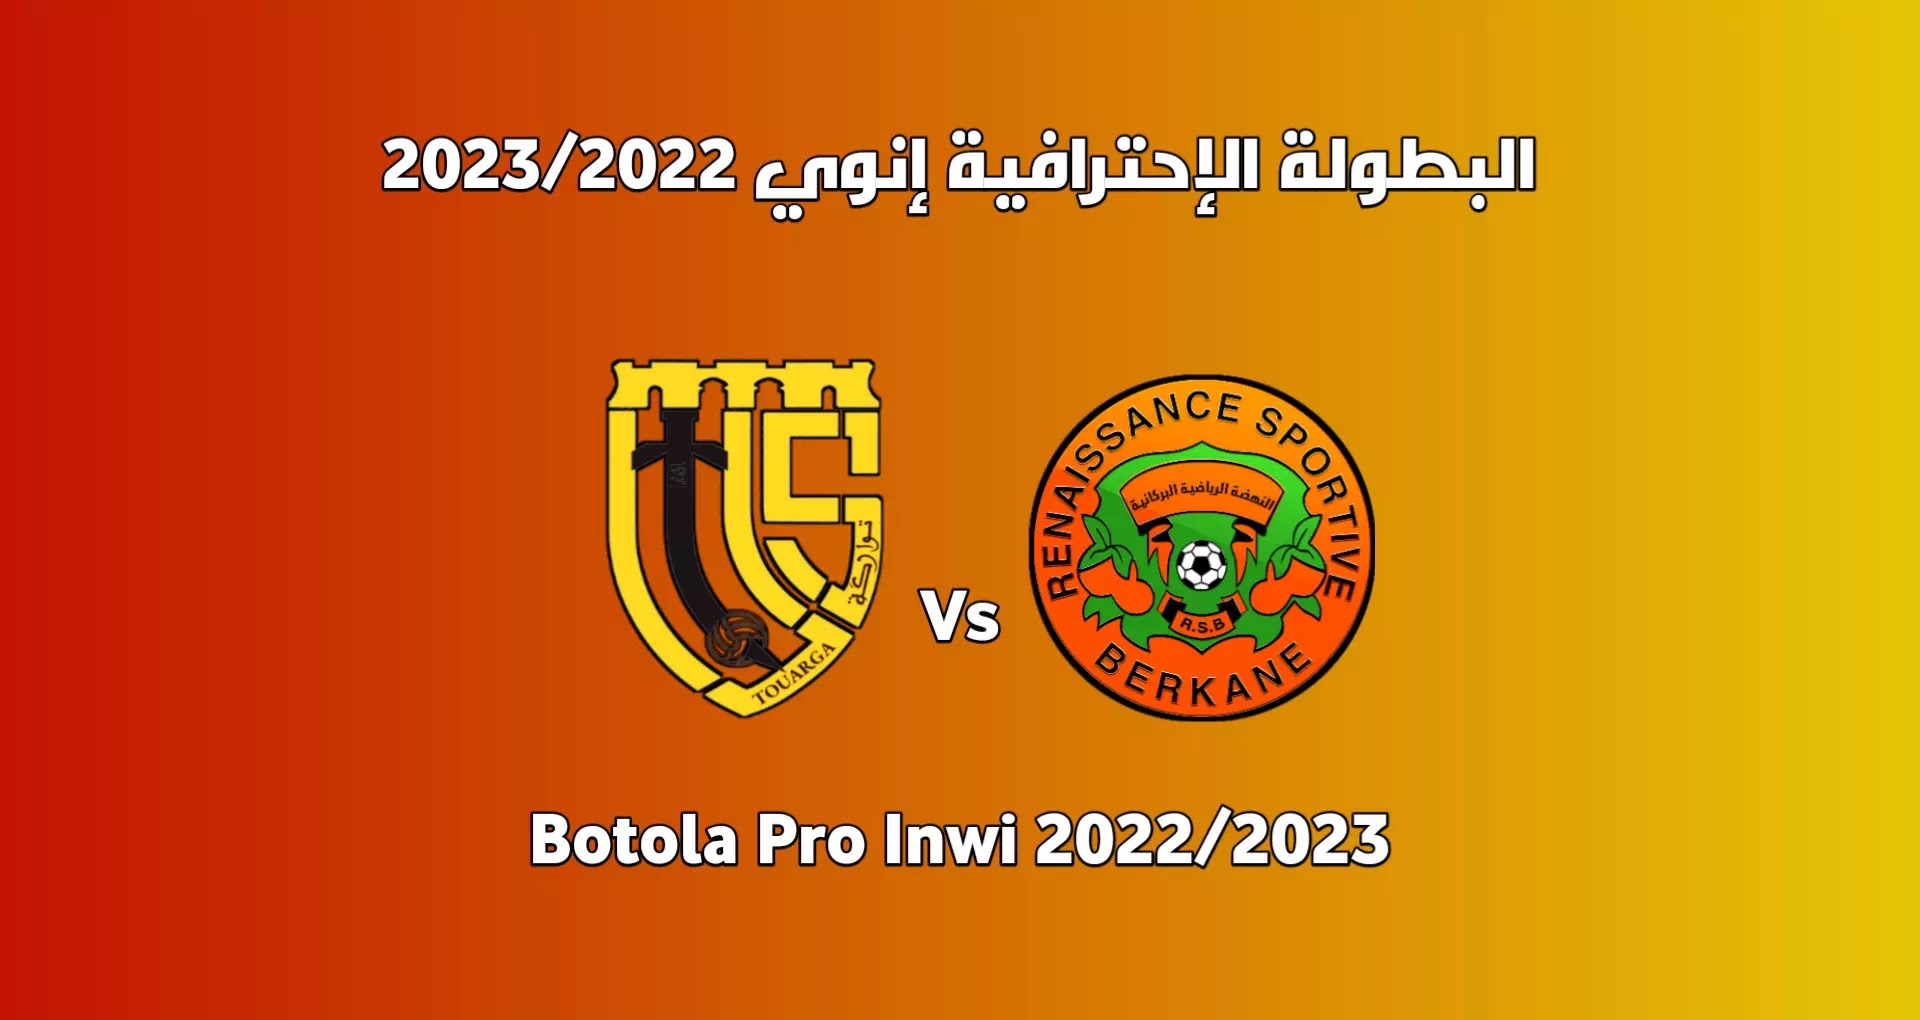 موعد مباراة نهضة بركان واتحاد تواركة الجولة 28 من الدوري المغربي 2023/2022